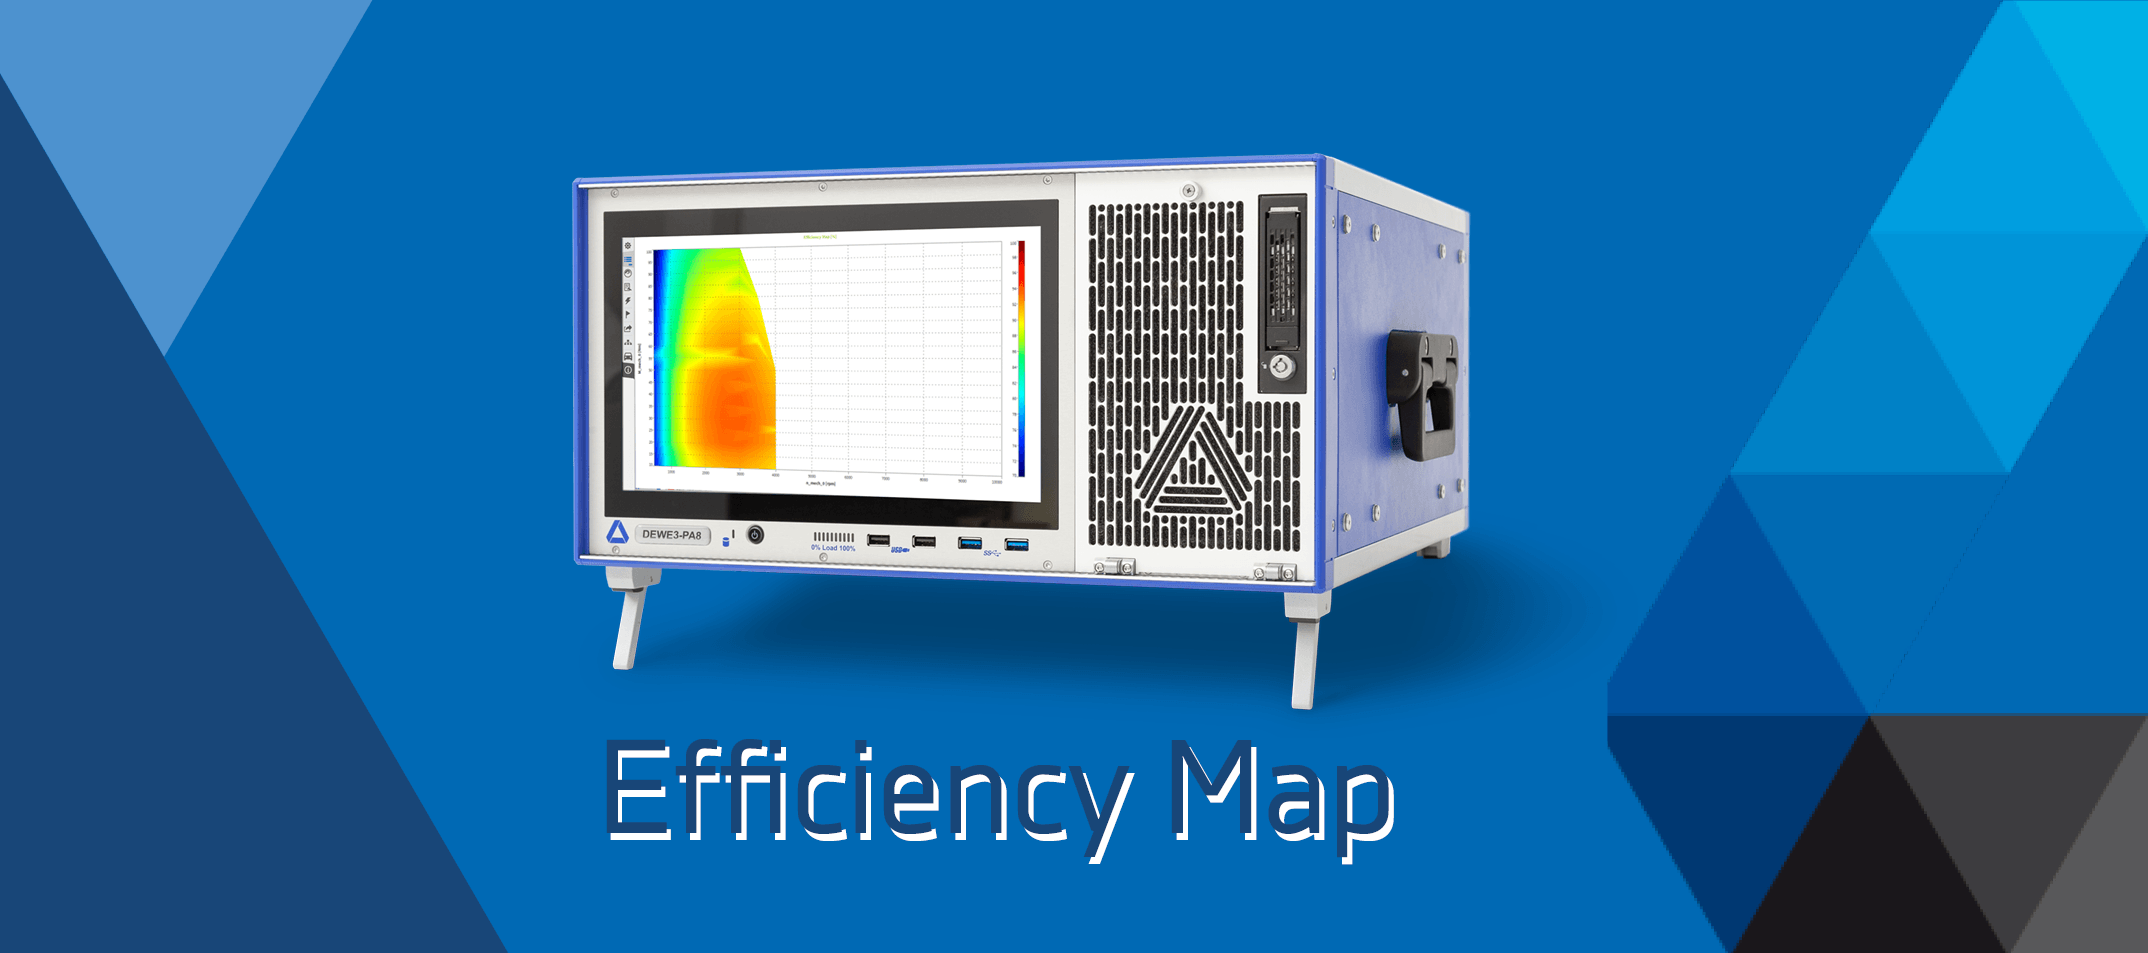 Efficiency Map on Power Analyzer